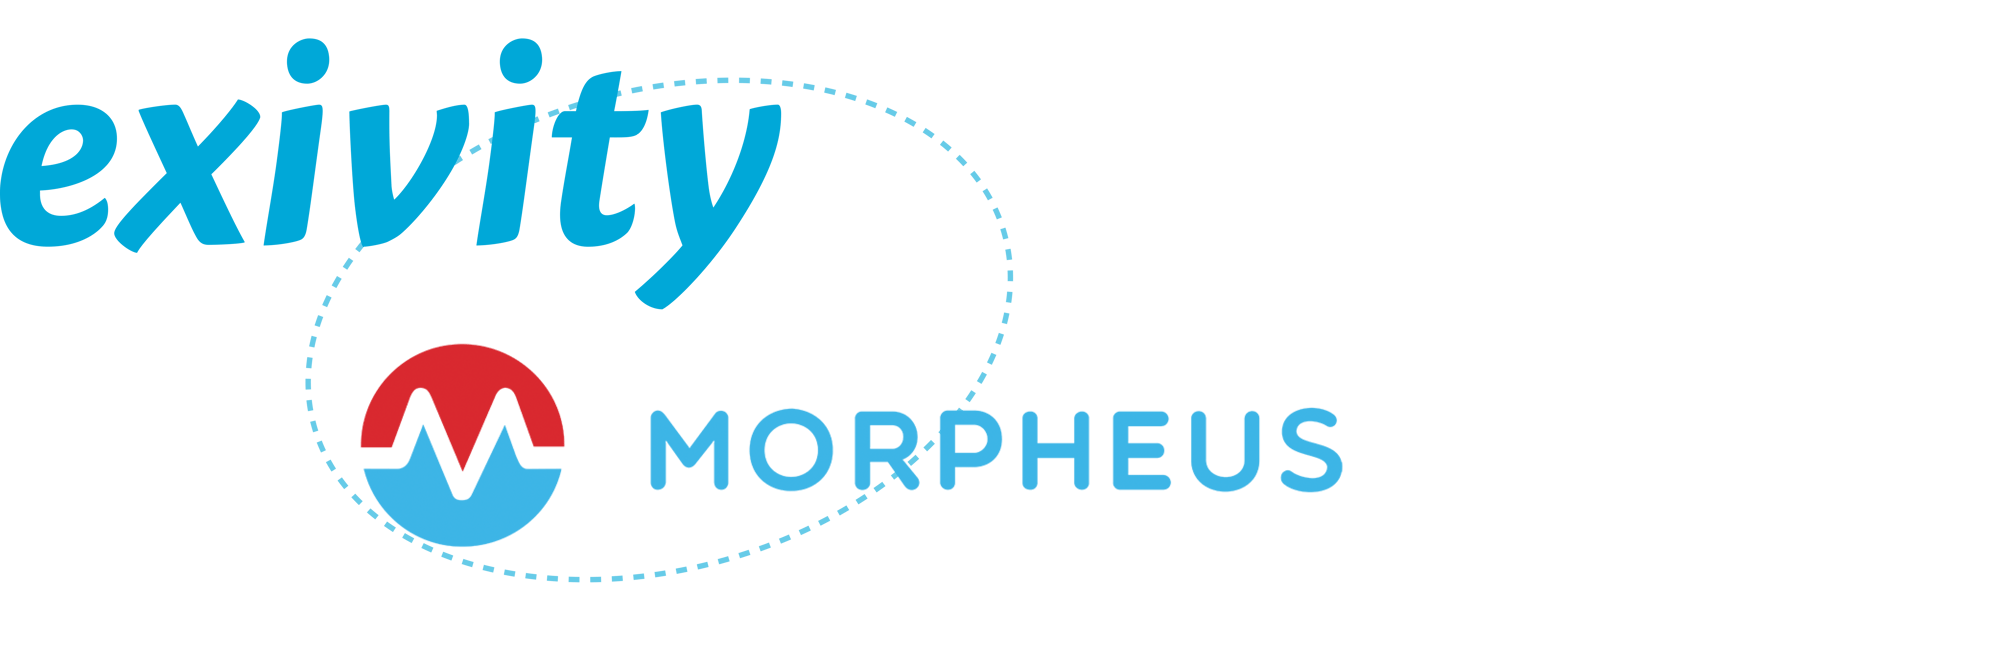 exivity-morpheus-1